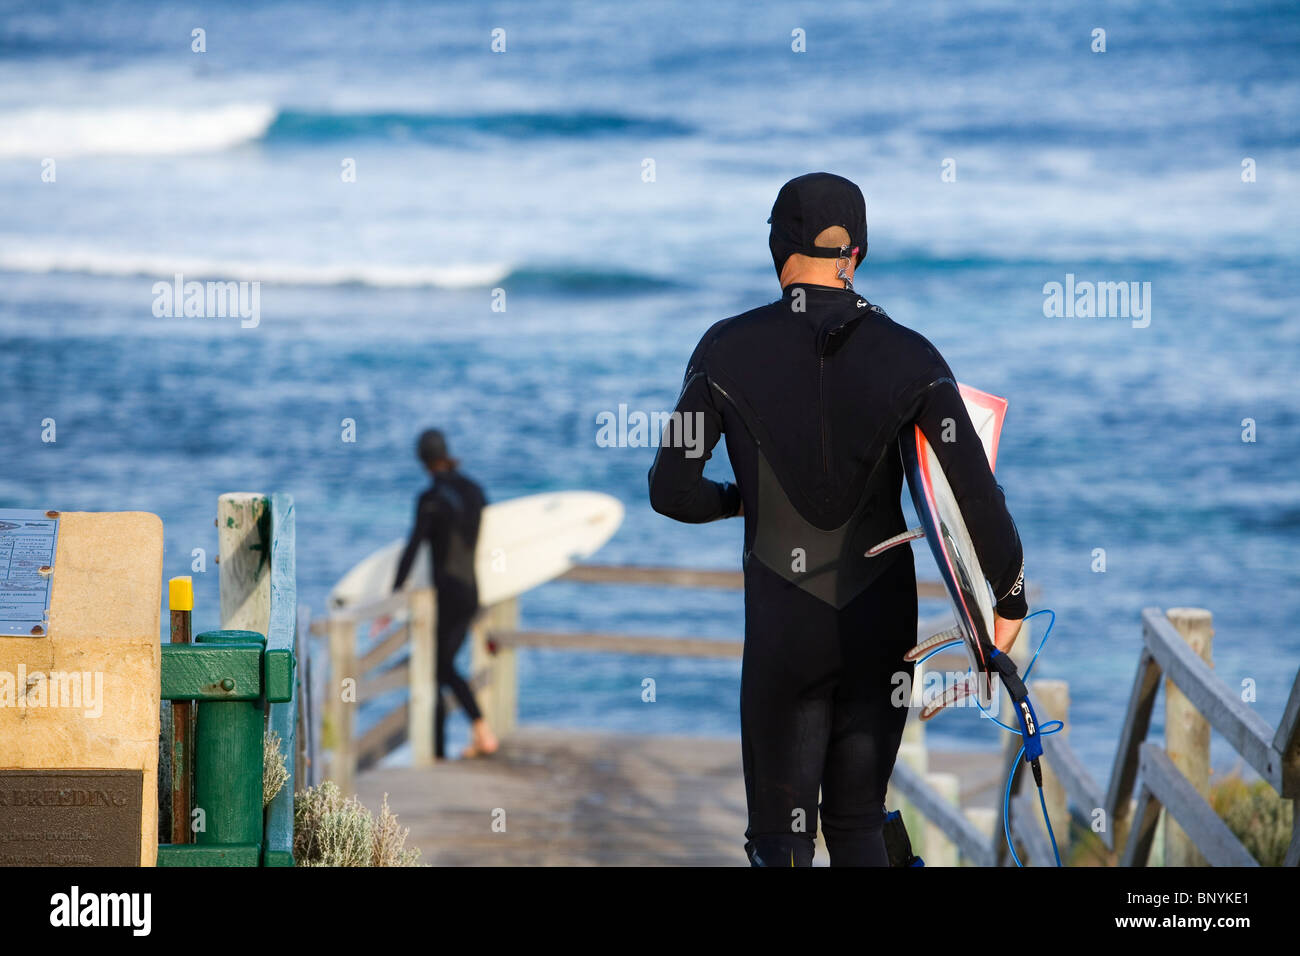 Surfeurs de Surfer's Point, connue localement sous le nom de Margaret's. Margaret River, Australie-Occidentale, Australie. Banque D'Images